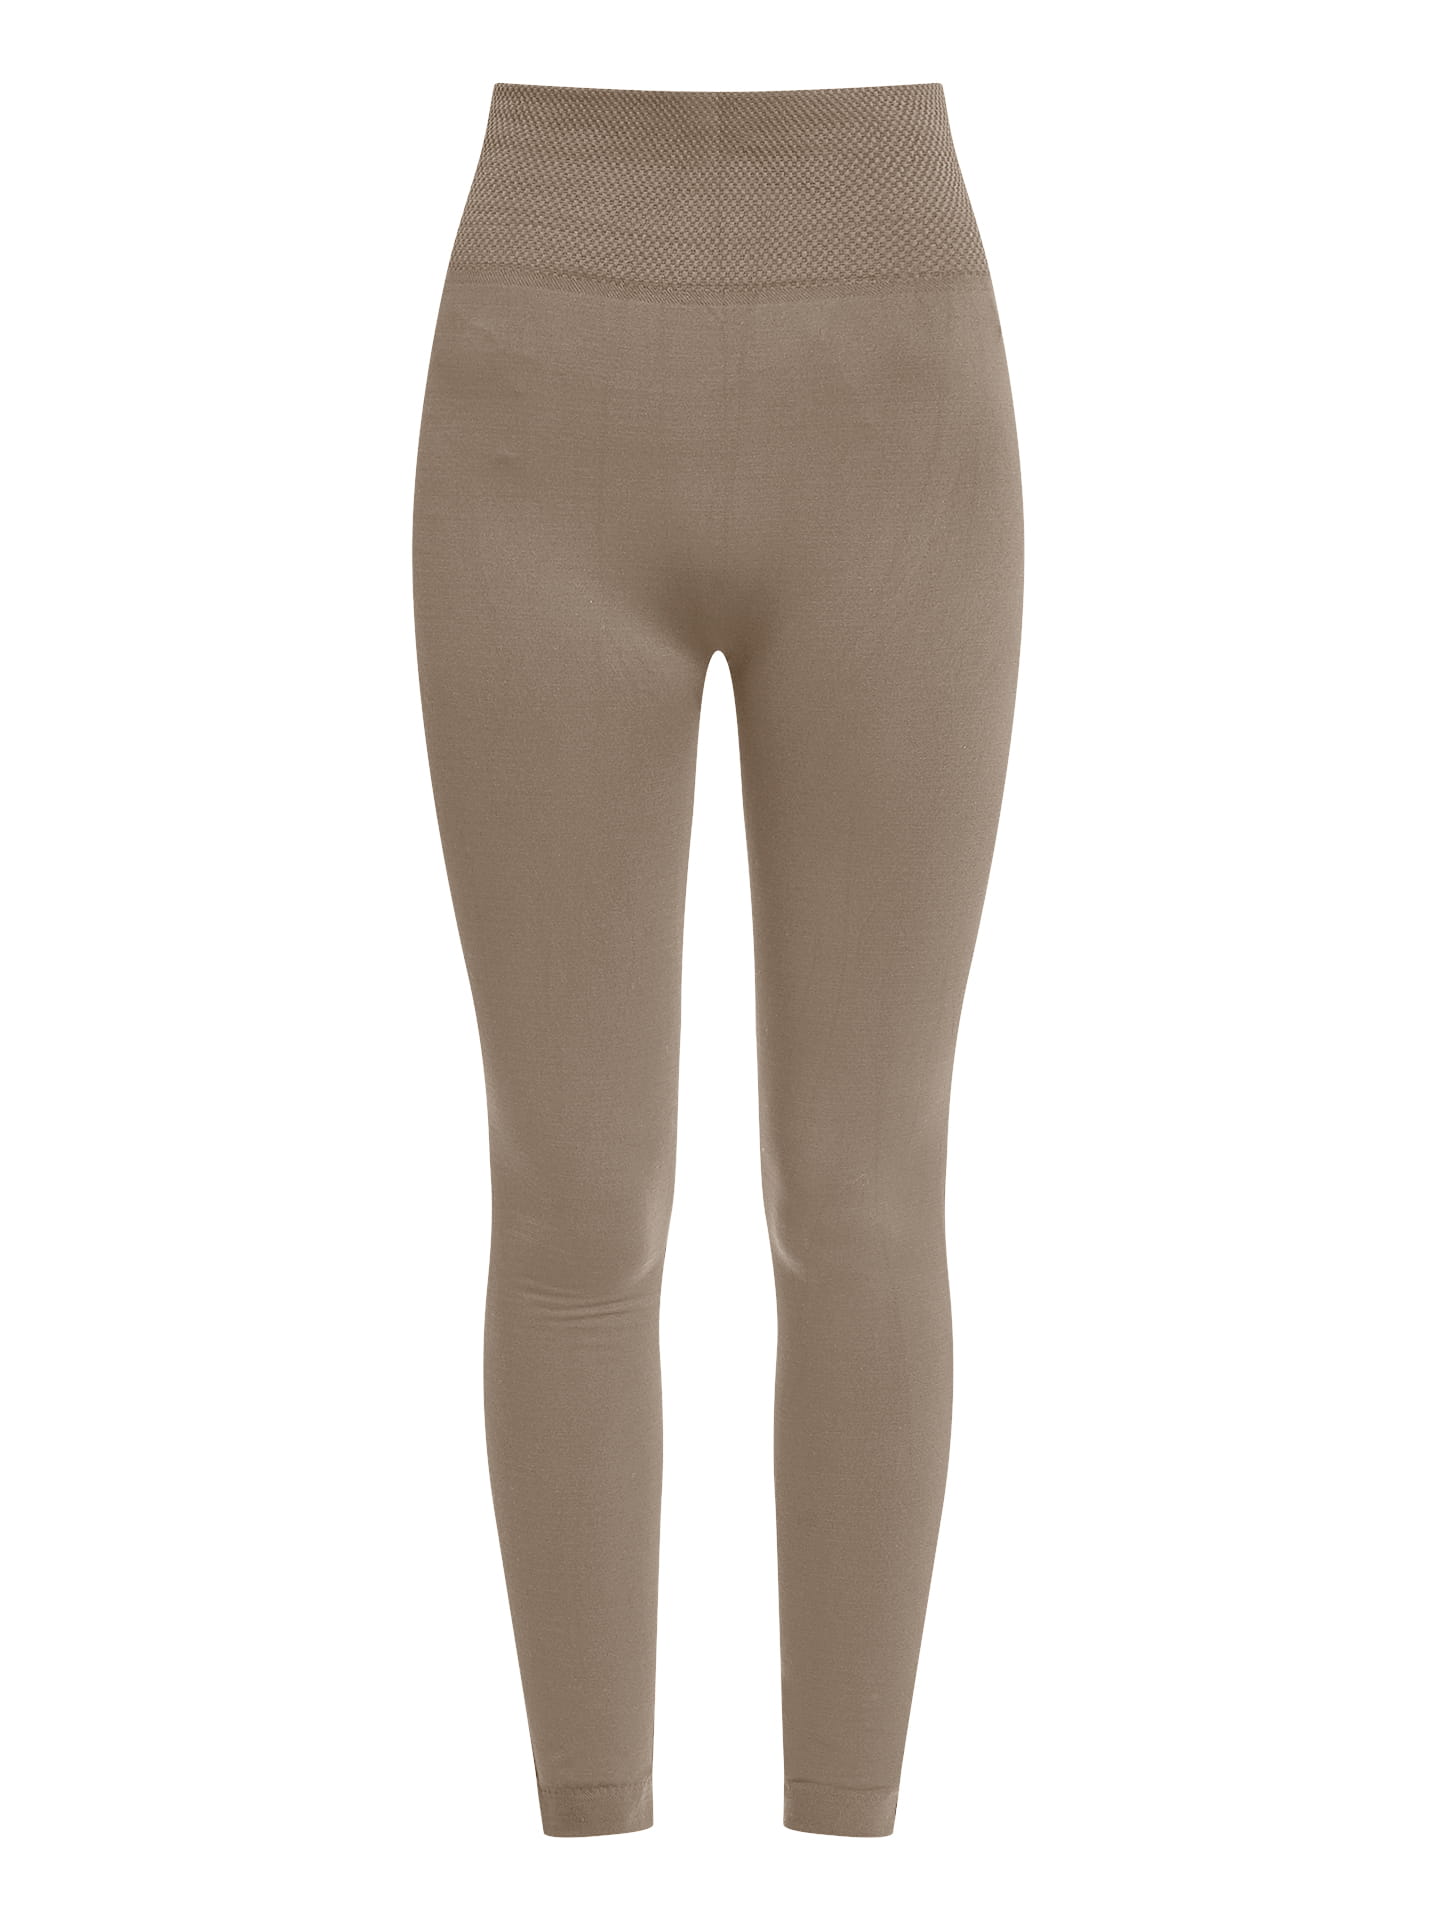 Elastic thermal leggings in light brown, 6.99€